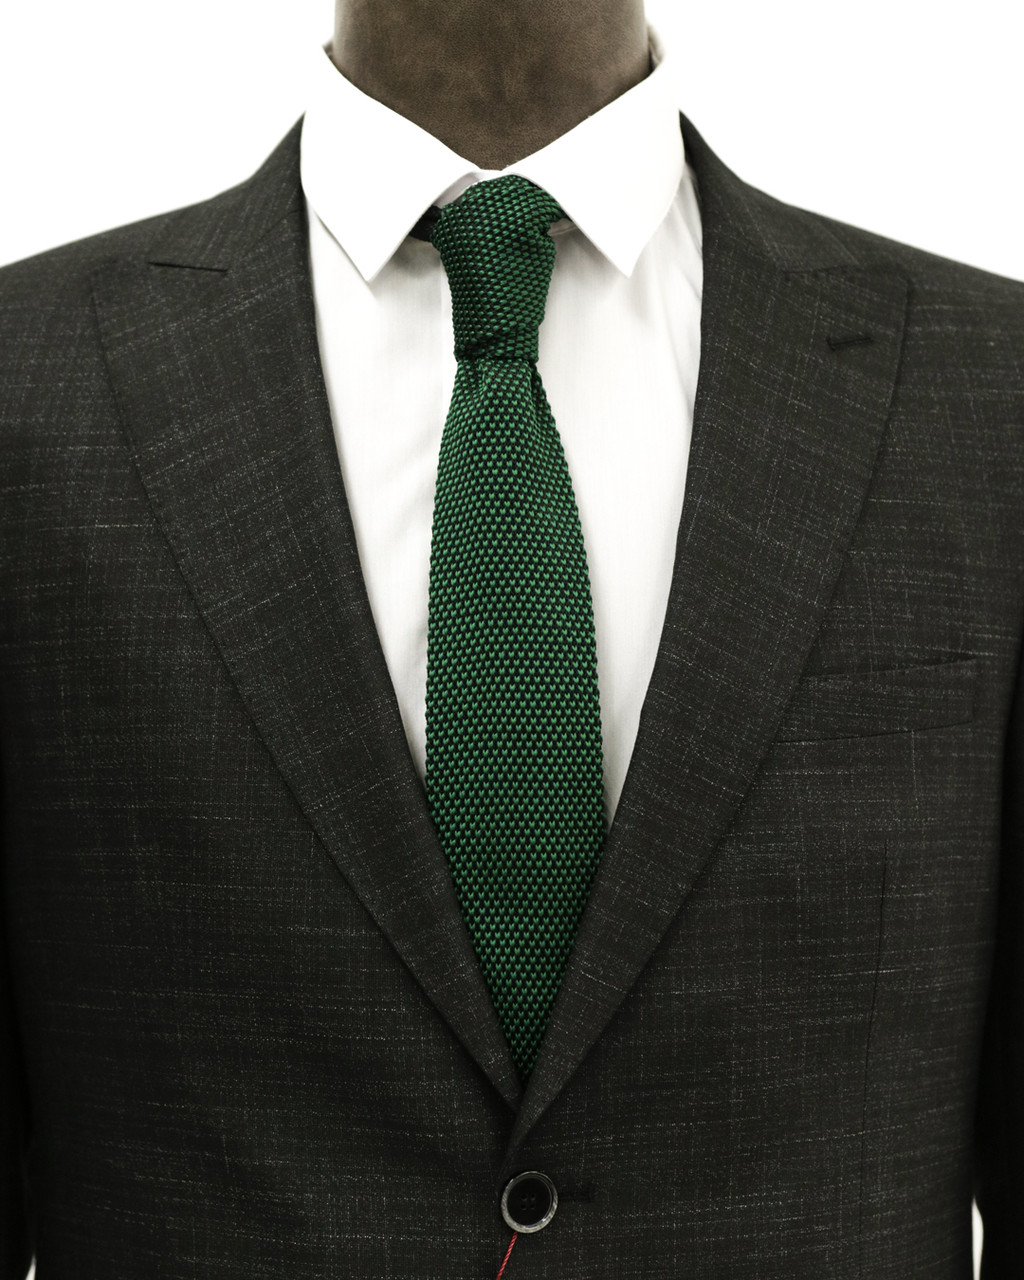 Мужской галстук «UM&H jrs9» зеленый (полиэстер)